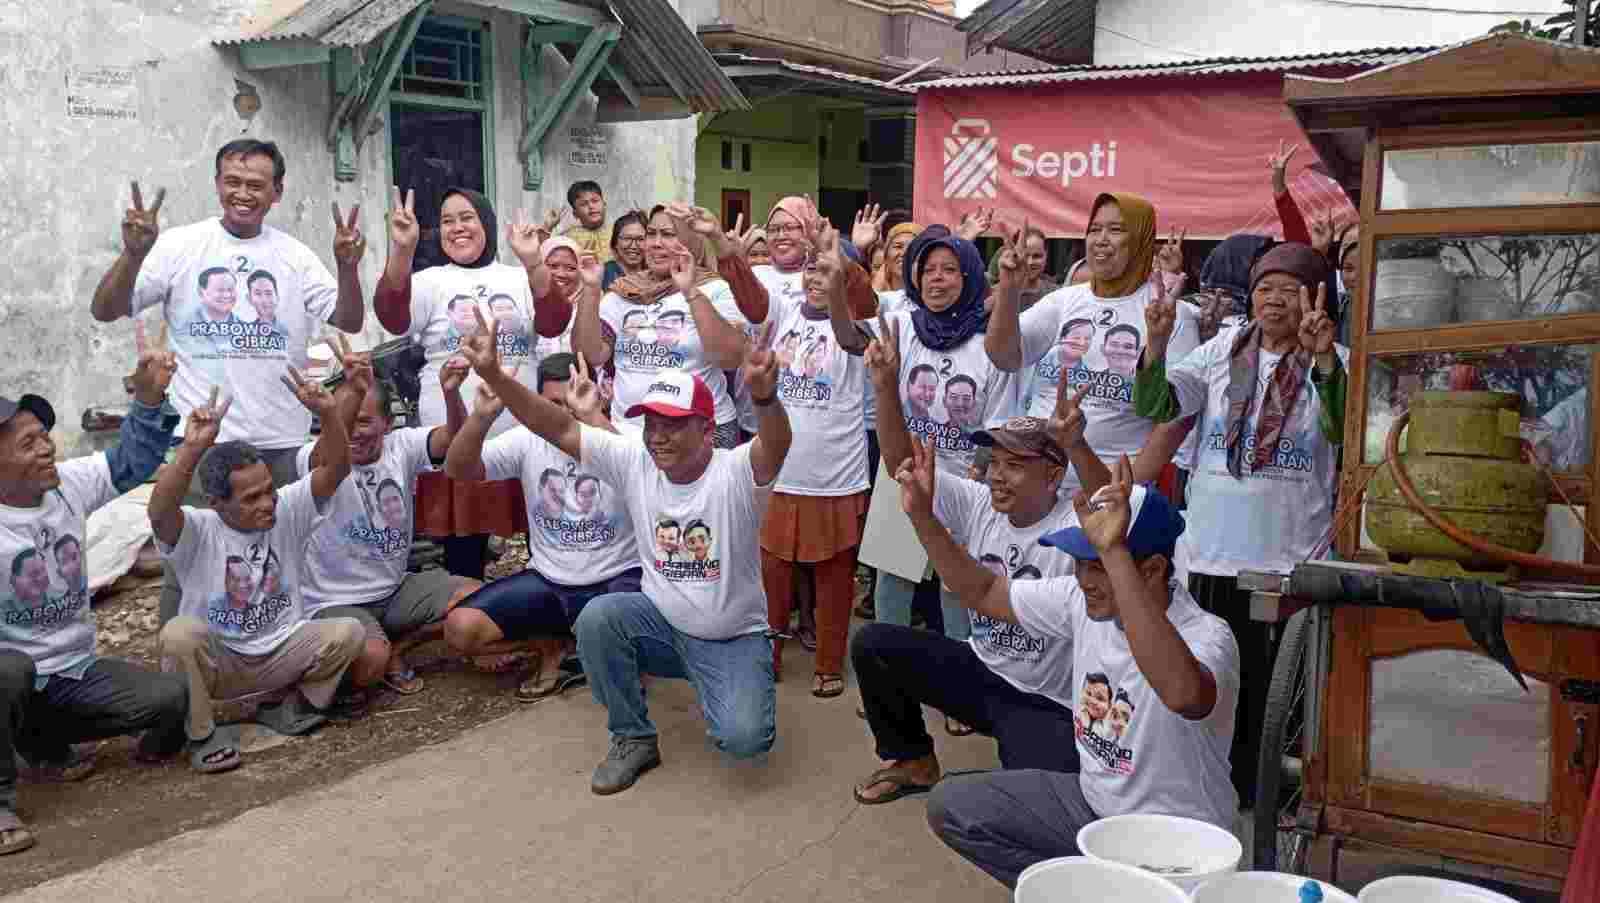 Brilian Gandeng Masyarakat Kabupaten Bekasi dalam Ajang Demokrasi Bagi-bagi Bakso, Kaos, dan Kalender Gratis